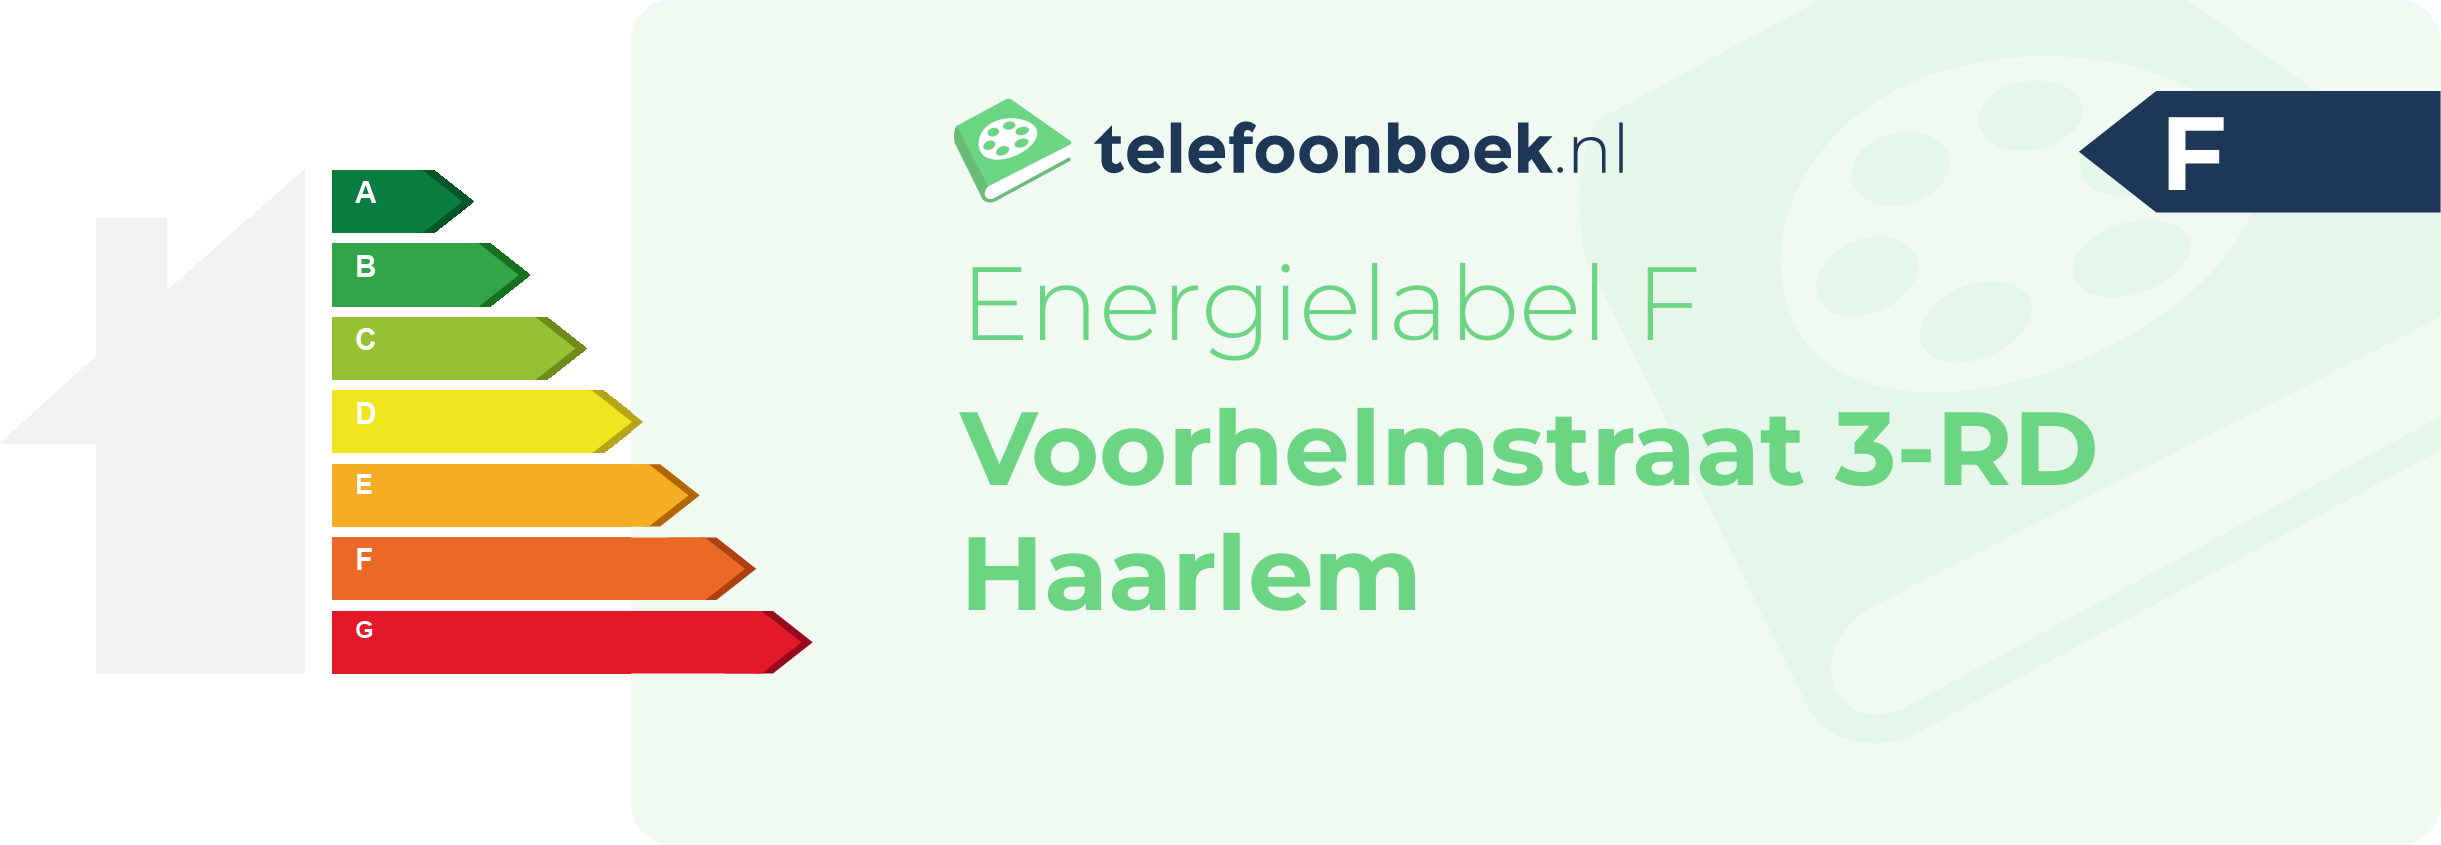 Energielabel Voorhelmstraat 3-RD Haarlem